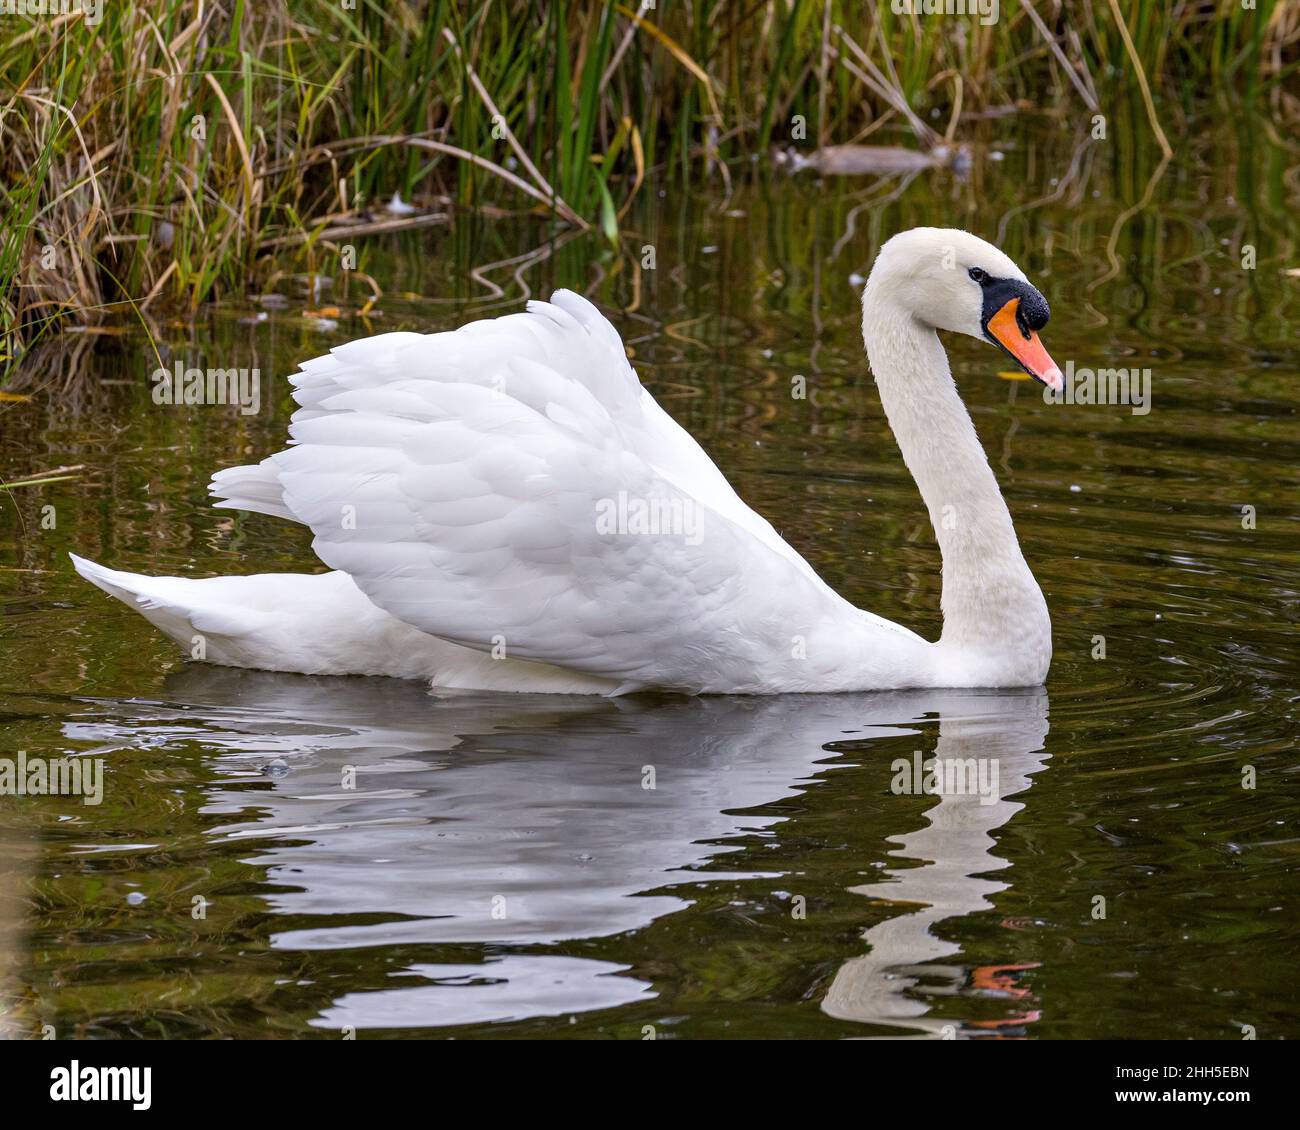 Swan Mute oiseau nageant avec des ailes blanches étendues avec fond d'eau dans son environnement et son habitat environnant.Portrait.Image.Image.Photo. Banque D'Images